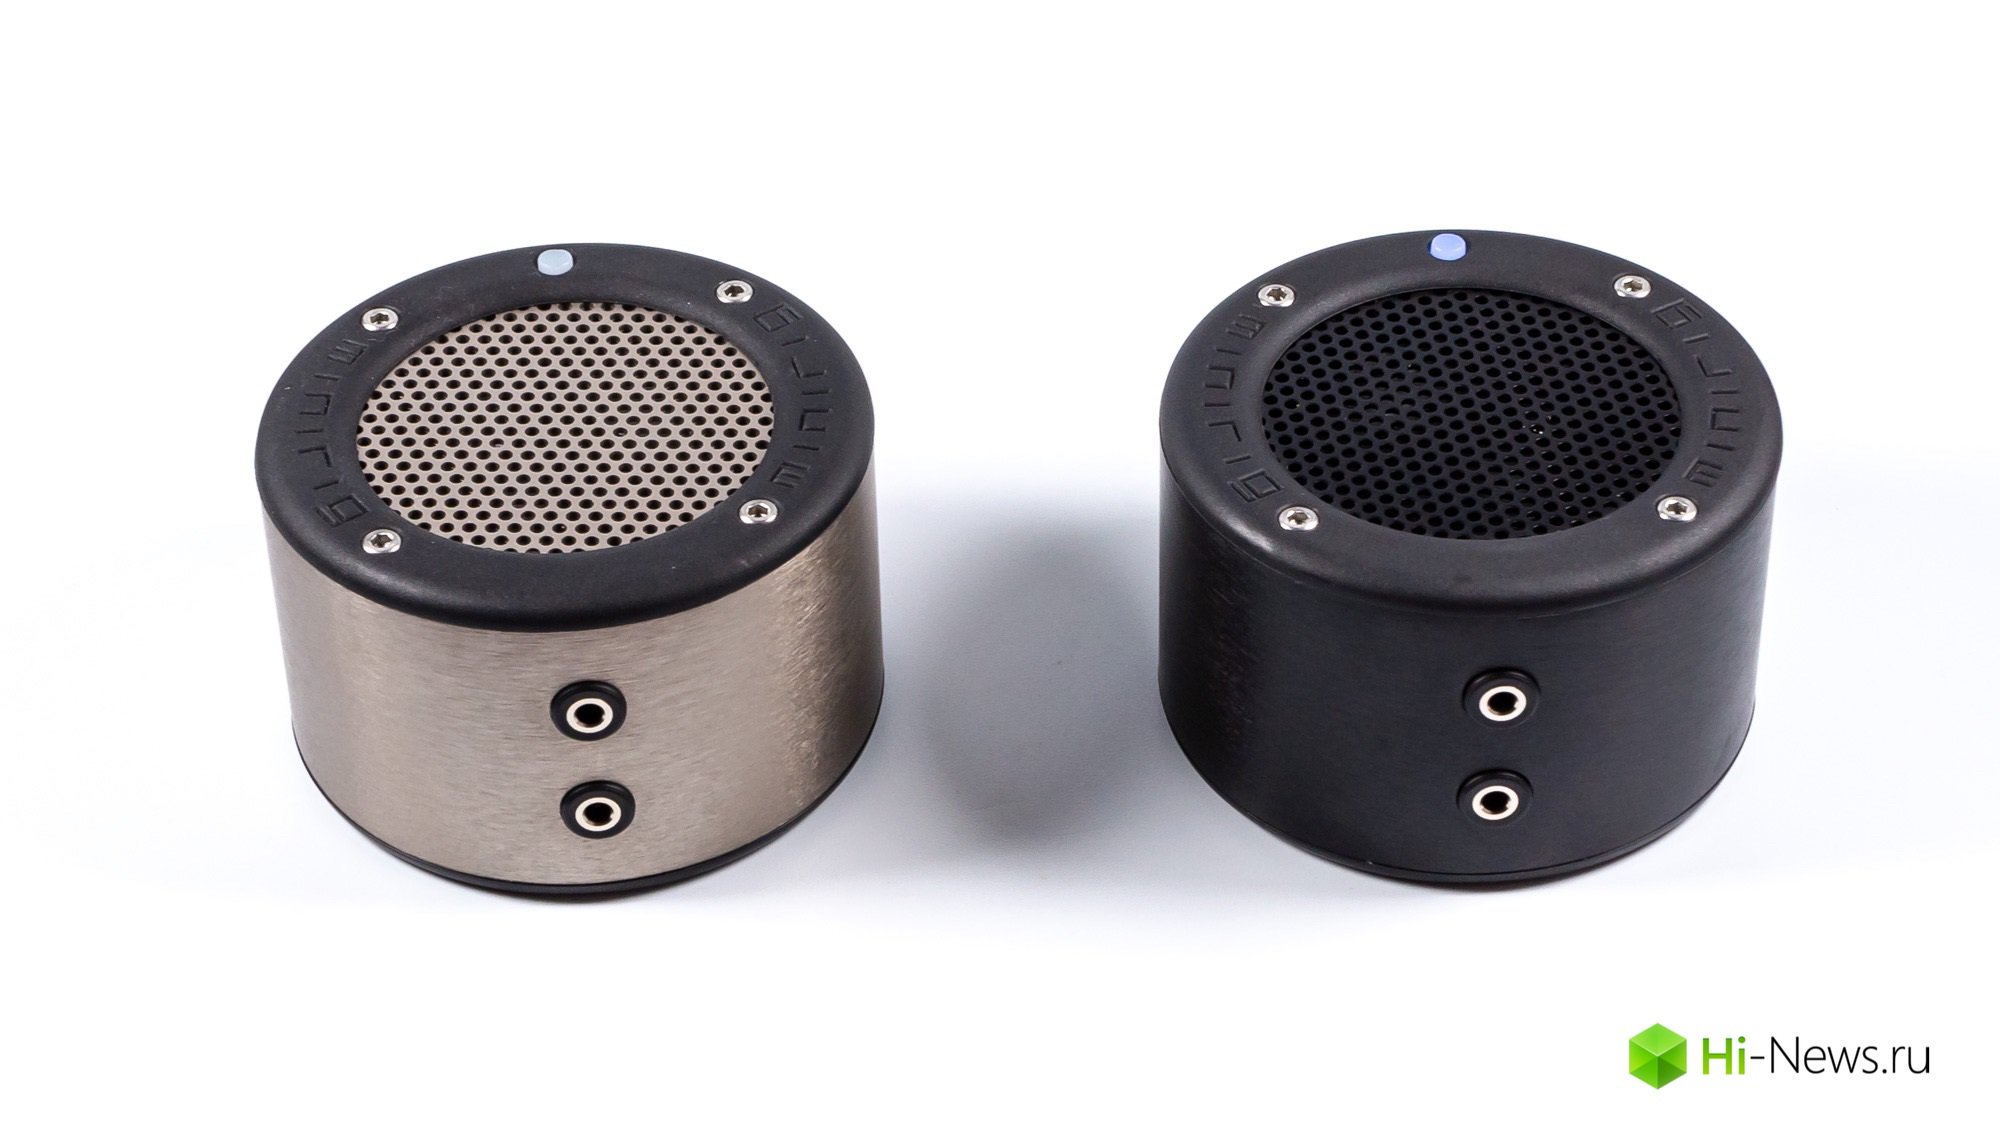 Übersicht der tragbare Bluetooth-Lautsprecher MiniRig Mini — klein, ja удаленькая